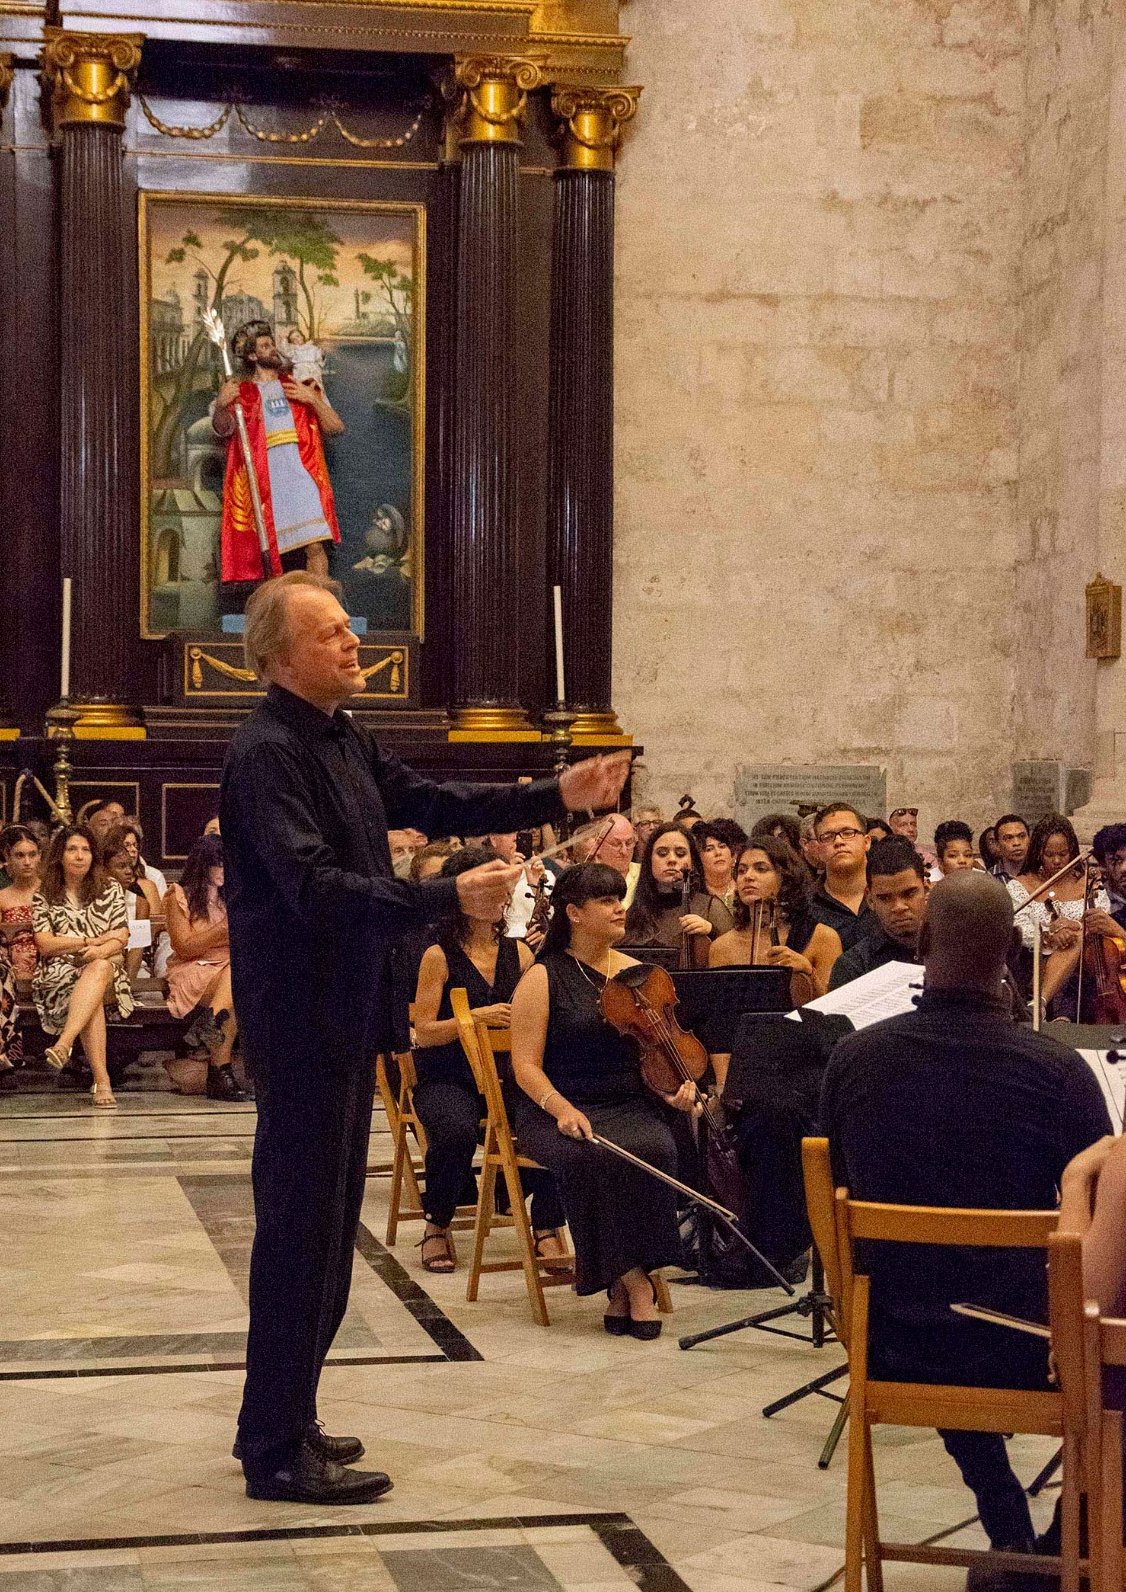 Alrededor de 1 500 personas abarrotaron la Catedral de La Habana para disfrutar de un programa concierto que incluyó el Réquiem de Mozart la noche del pasado 15 de abril